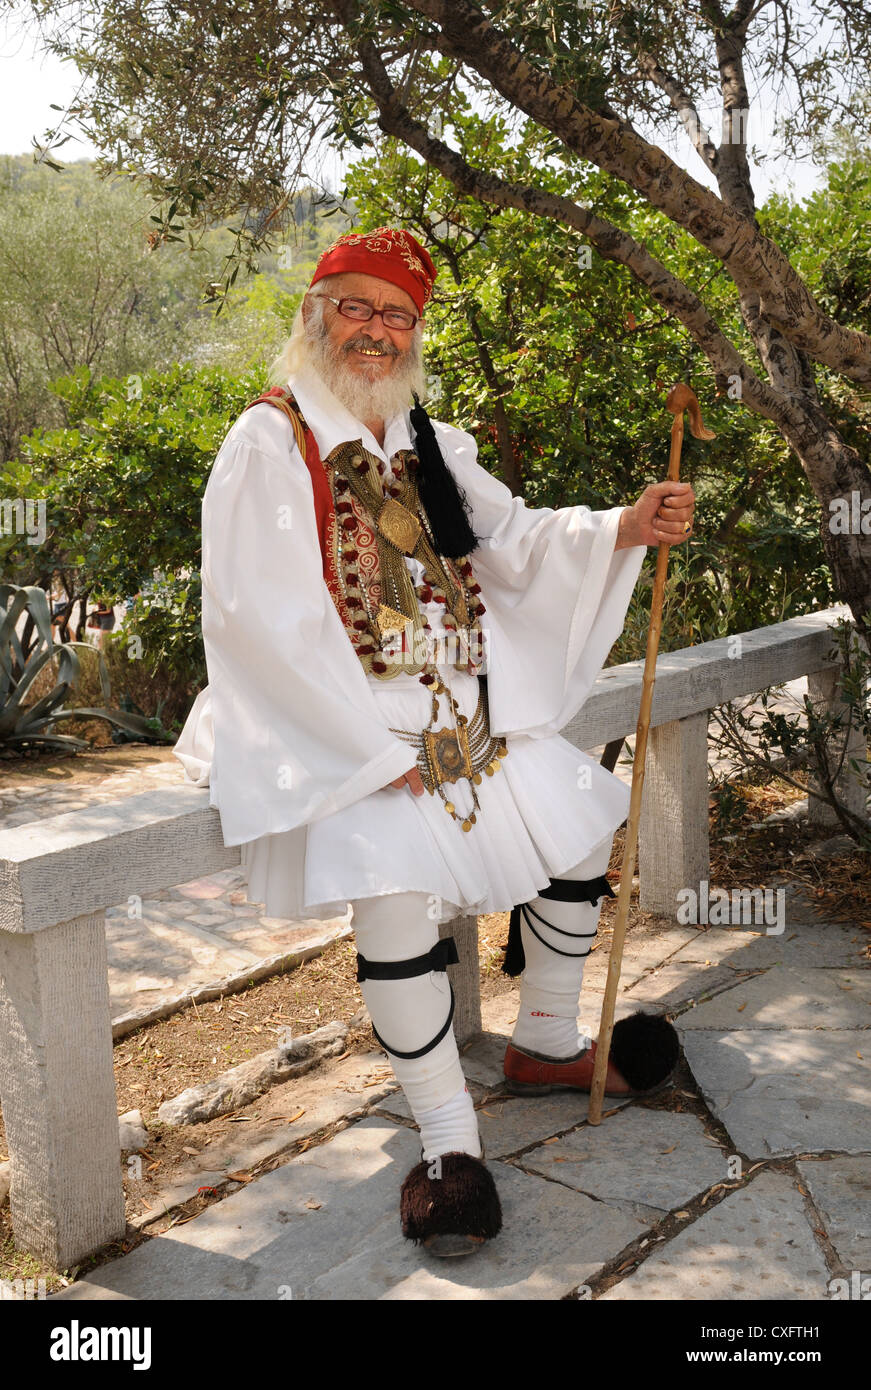 Costume greco immagini e fotografie stock ad alta risoluzione - Alamy